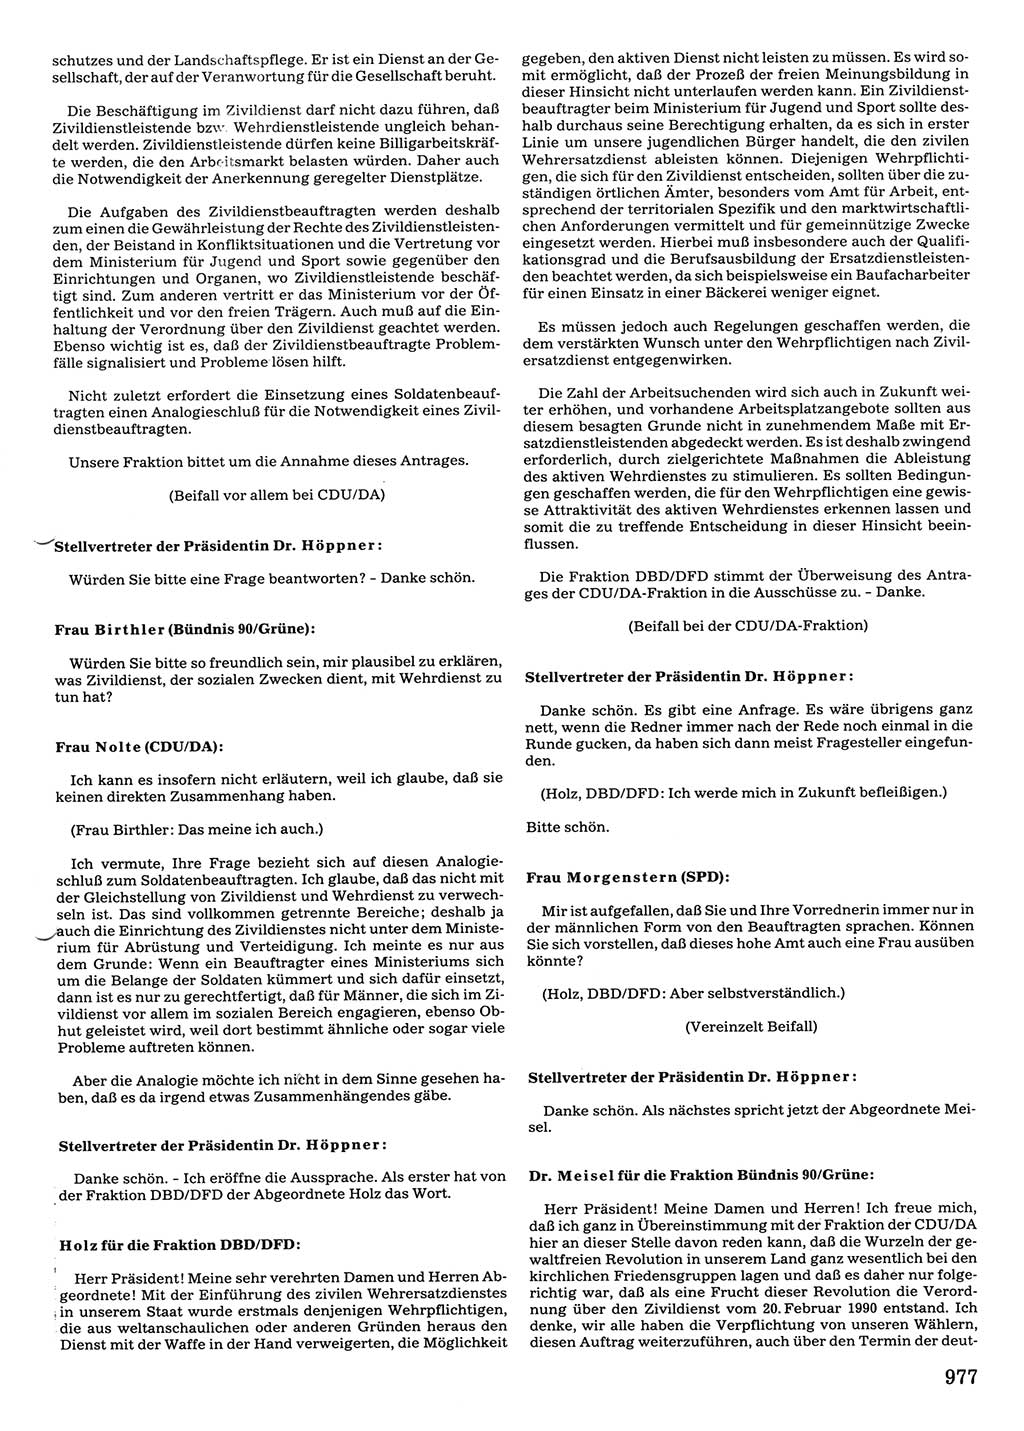 Tagungen der Volkskammer (VK) der Deutschen Demokratischen Republik (DDR), 10. Wahlperiode 1990, Seite 977 (VK. DDR 10. WP. 1990, Prot. Tg. 1-38, 5.4.-2.10.1990, S. 977)